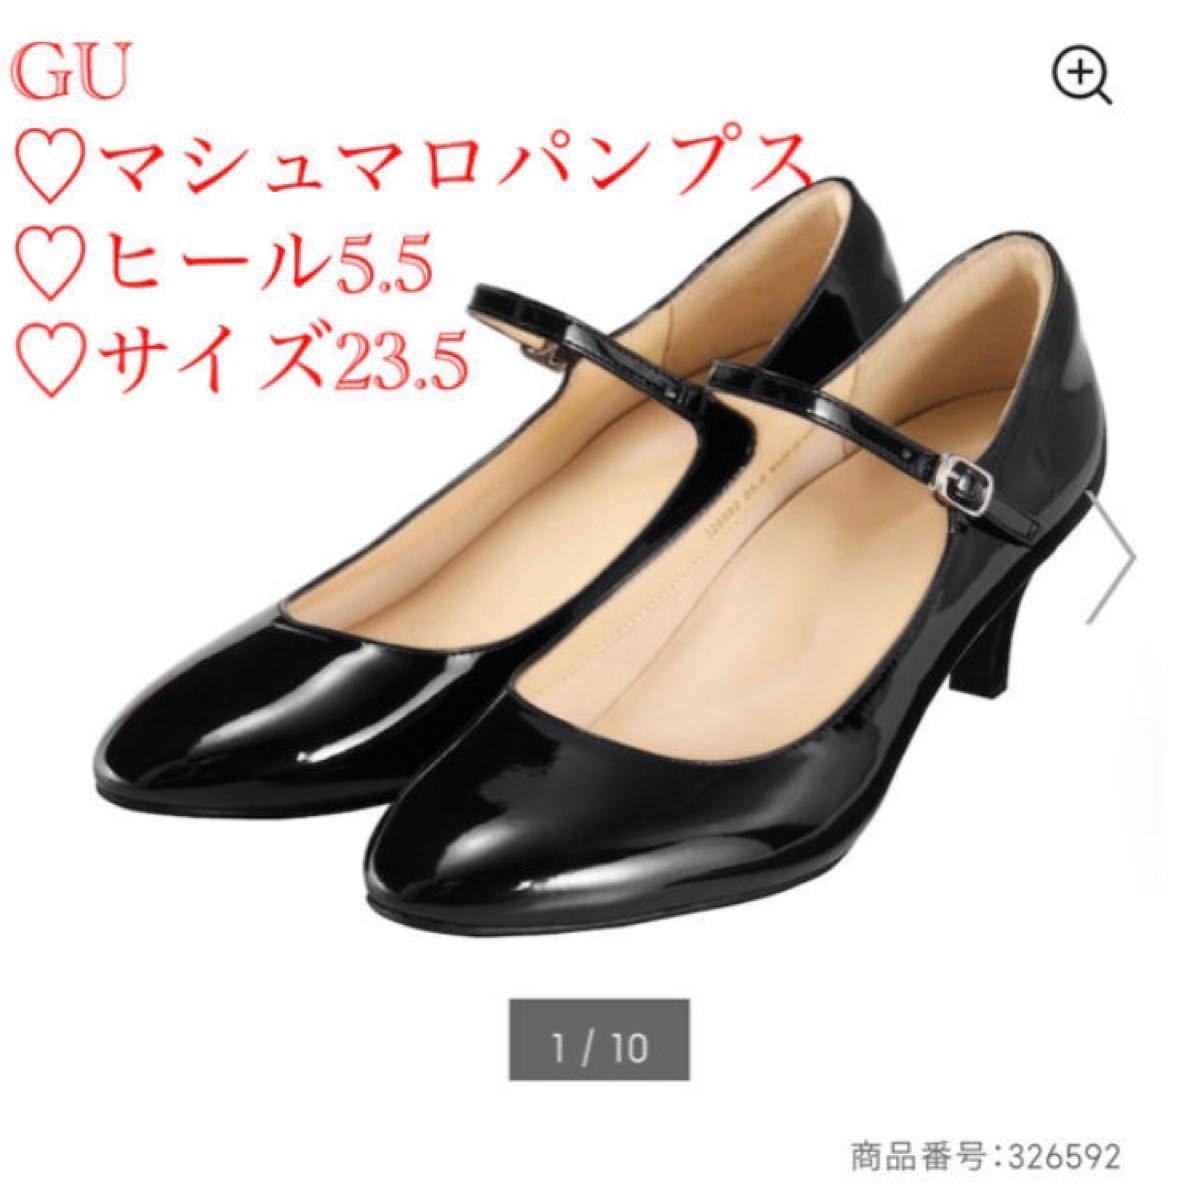 新品 GU マシュマロストラップヒールパンプス 黒 23.5 ヒール5.5